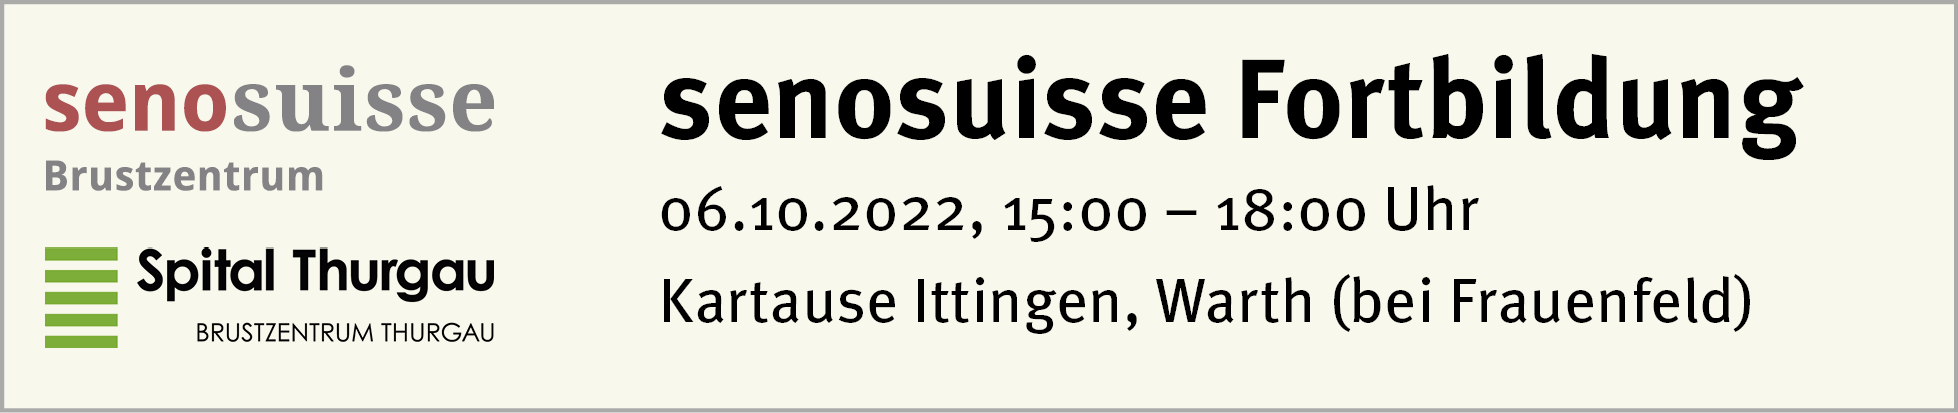 Jahreskongress gynécologie suisse 2022